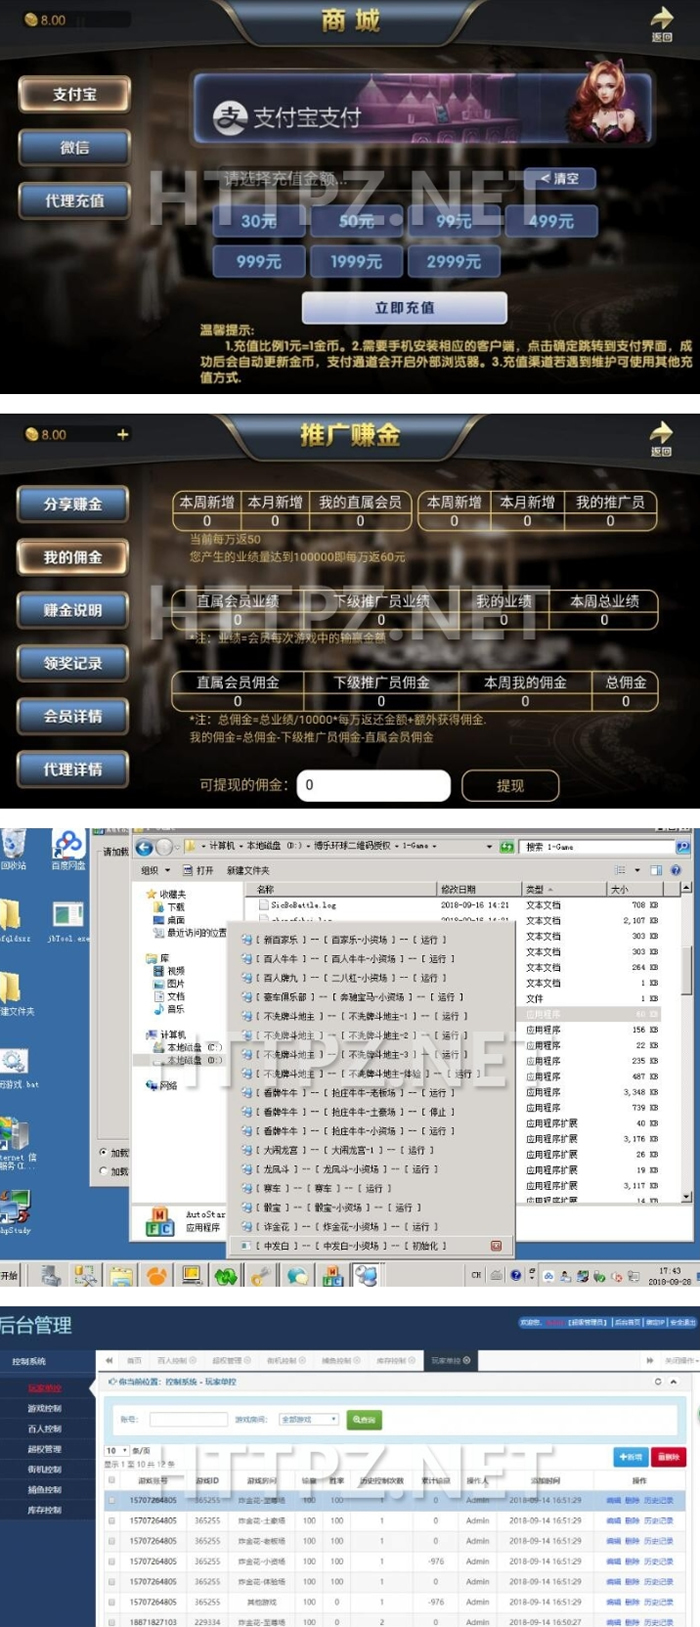 博乐ZQ娱乐游戏源码 1:1组件/网狐经典版二开源码程序